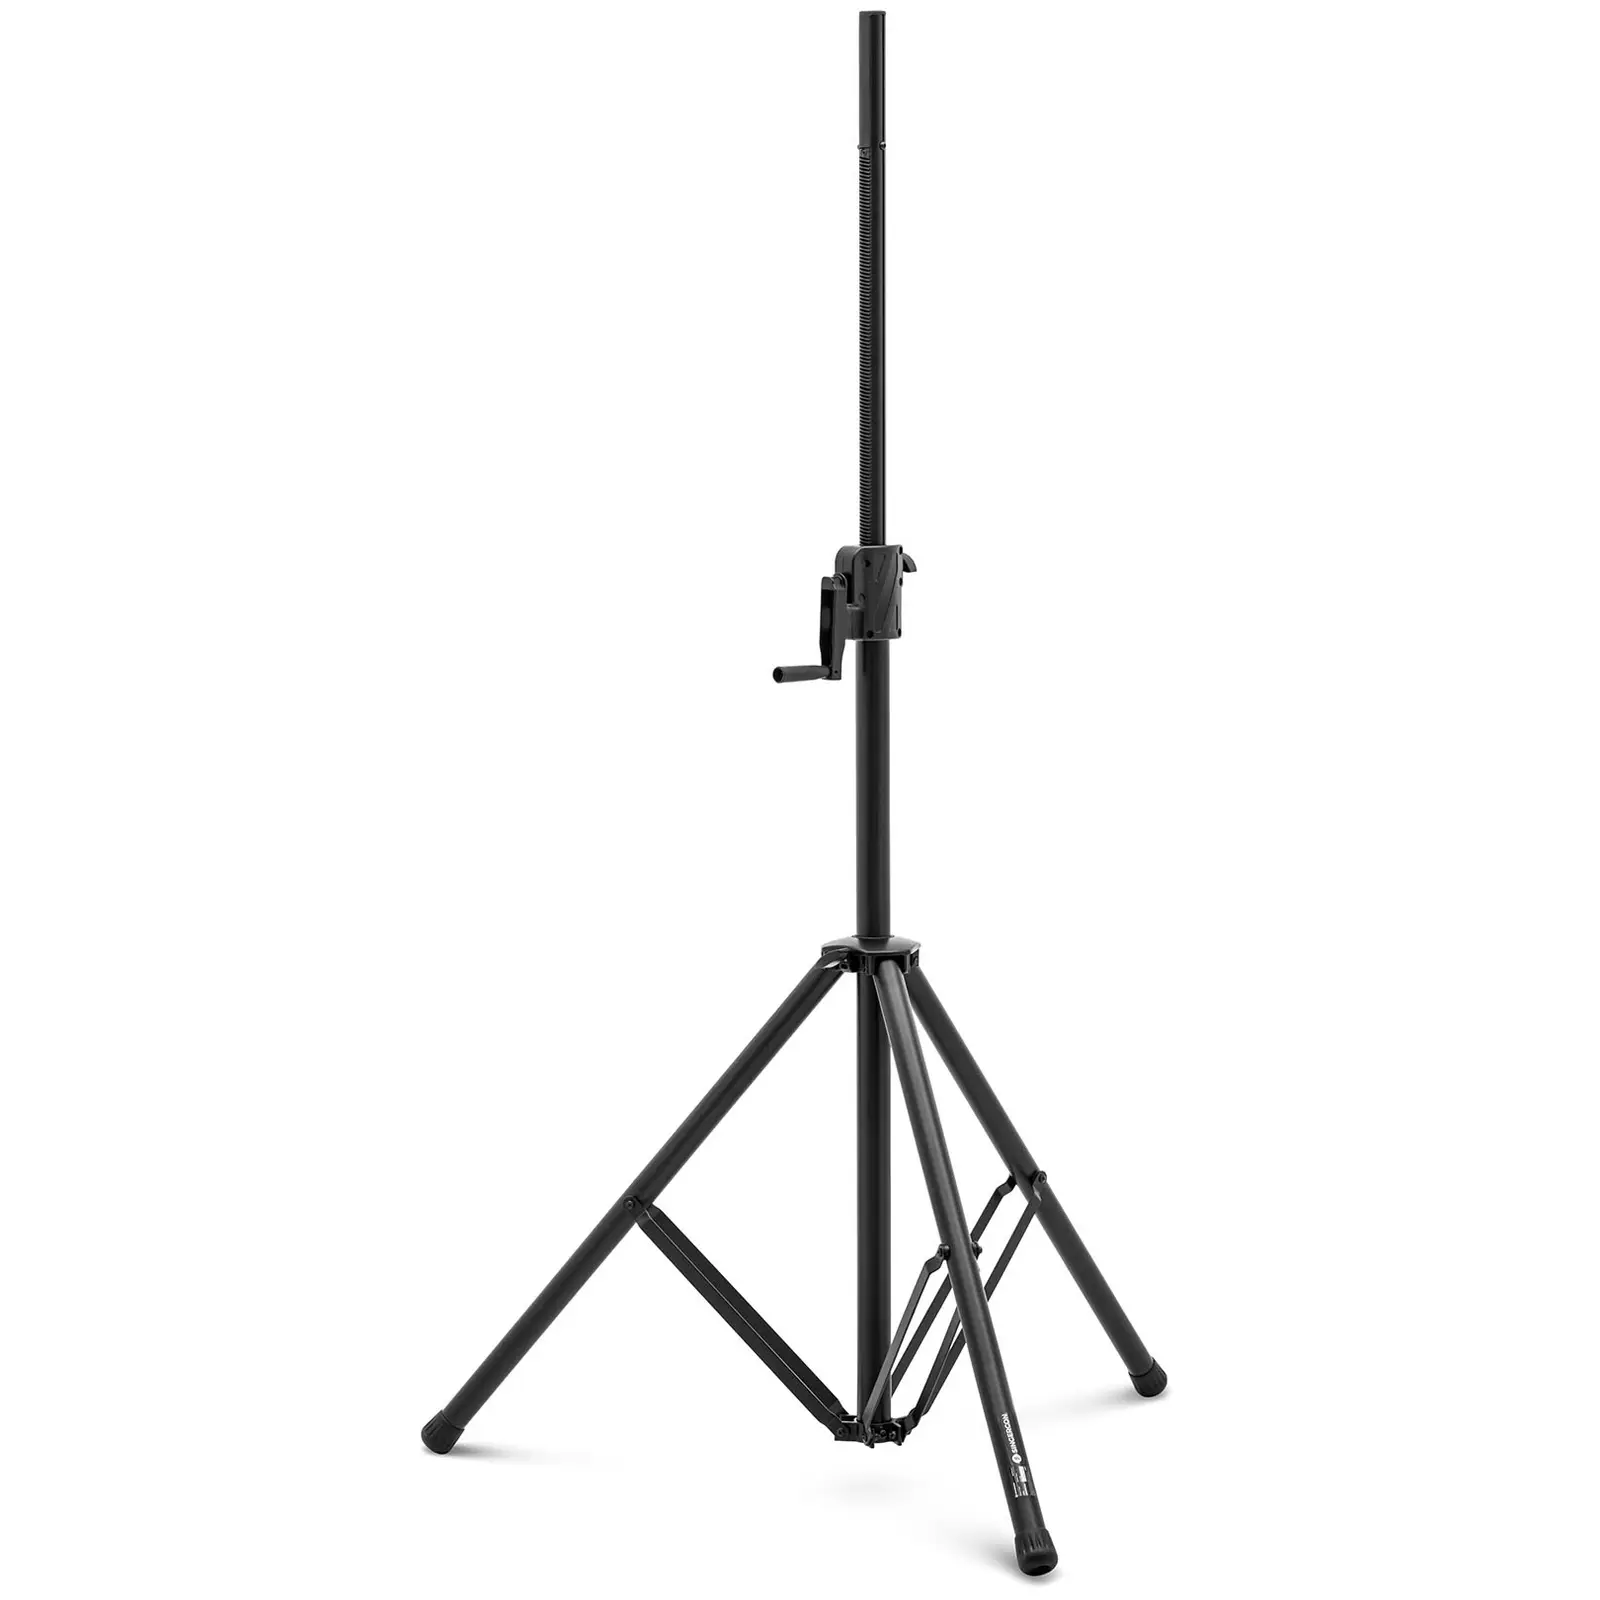 Stativ - für Lautsprecher und Beleuchtung - faltbar - bis 70 kg - 1450 - 2200 mm - Aluminium